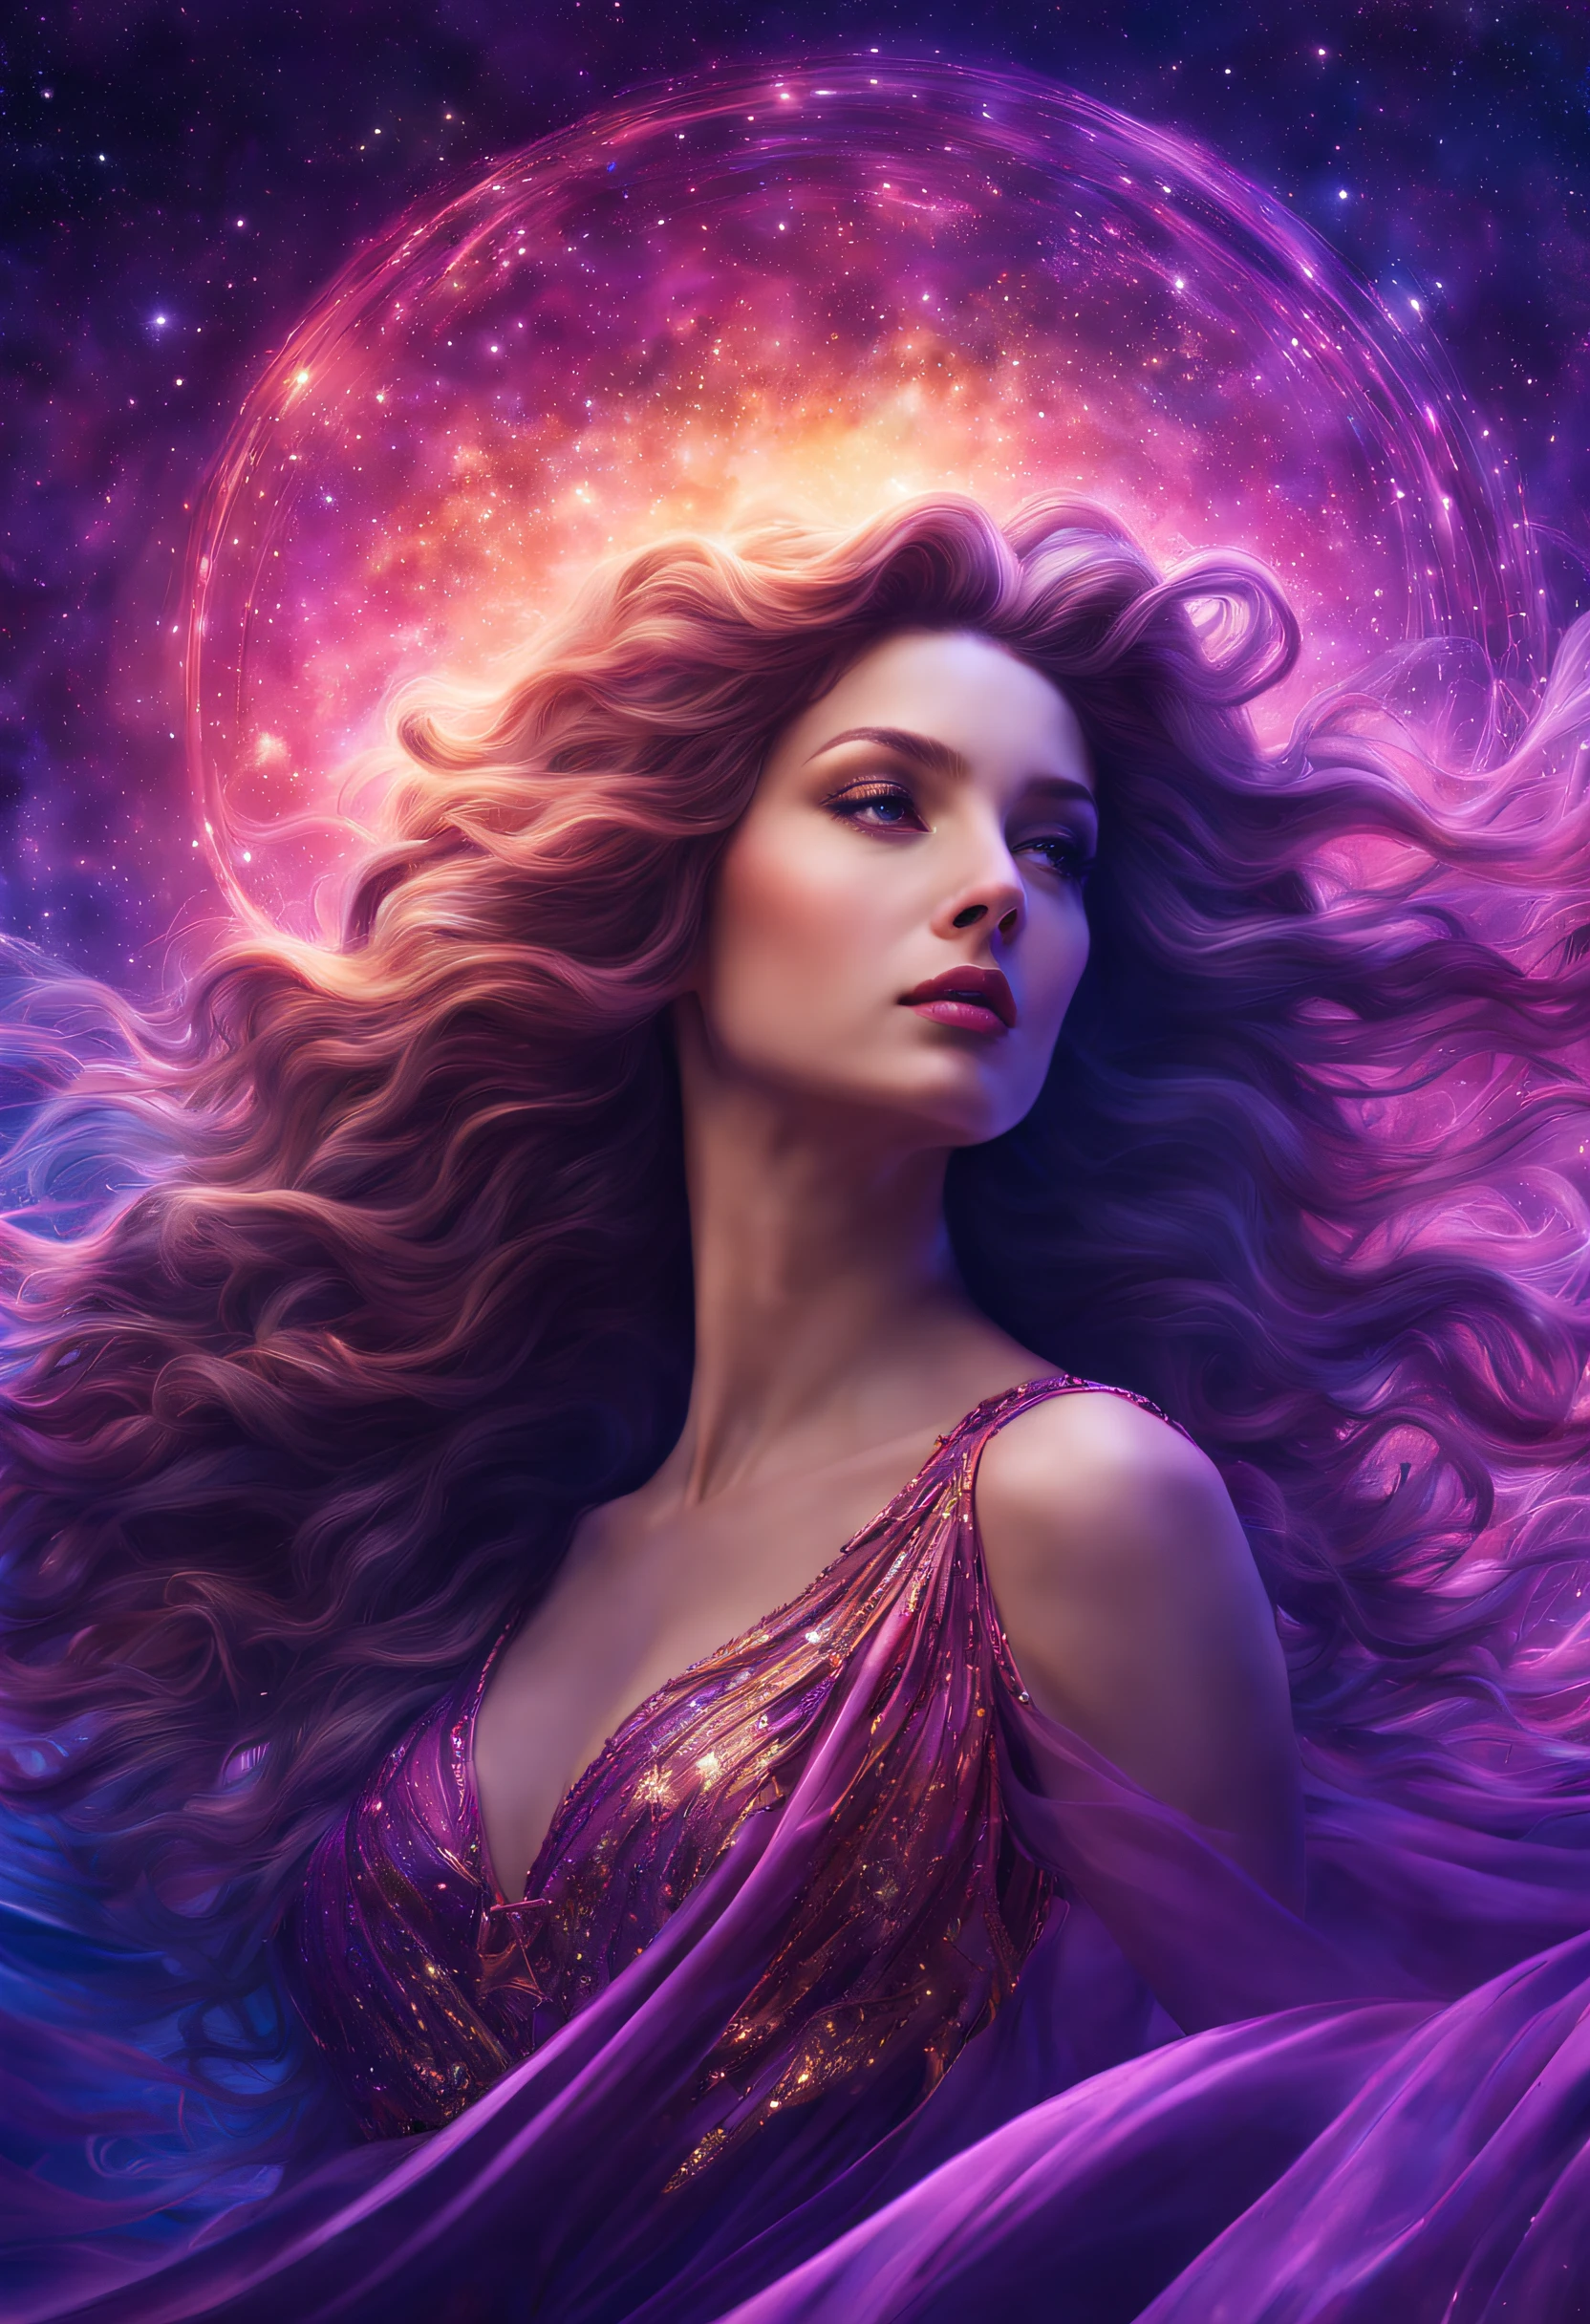 金星, 美の女神，幻想的な星の海，長く流れるような髪，素晴らしい色彩，映画の記録，8k，傑作，紫